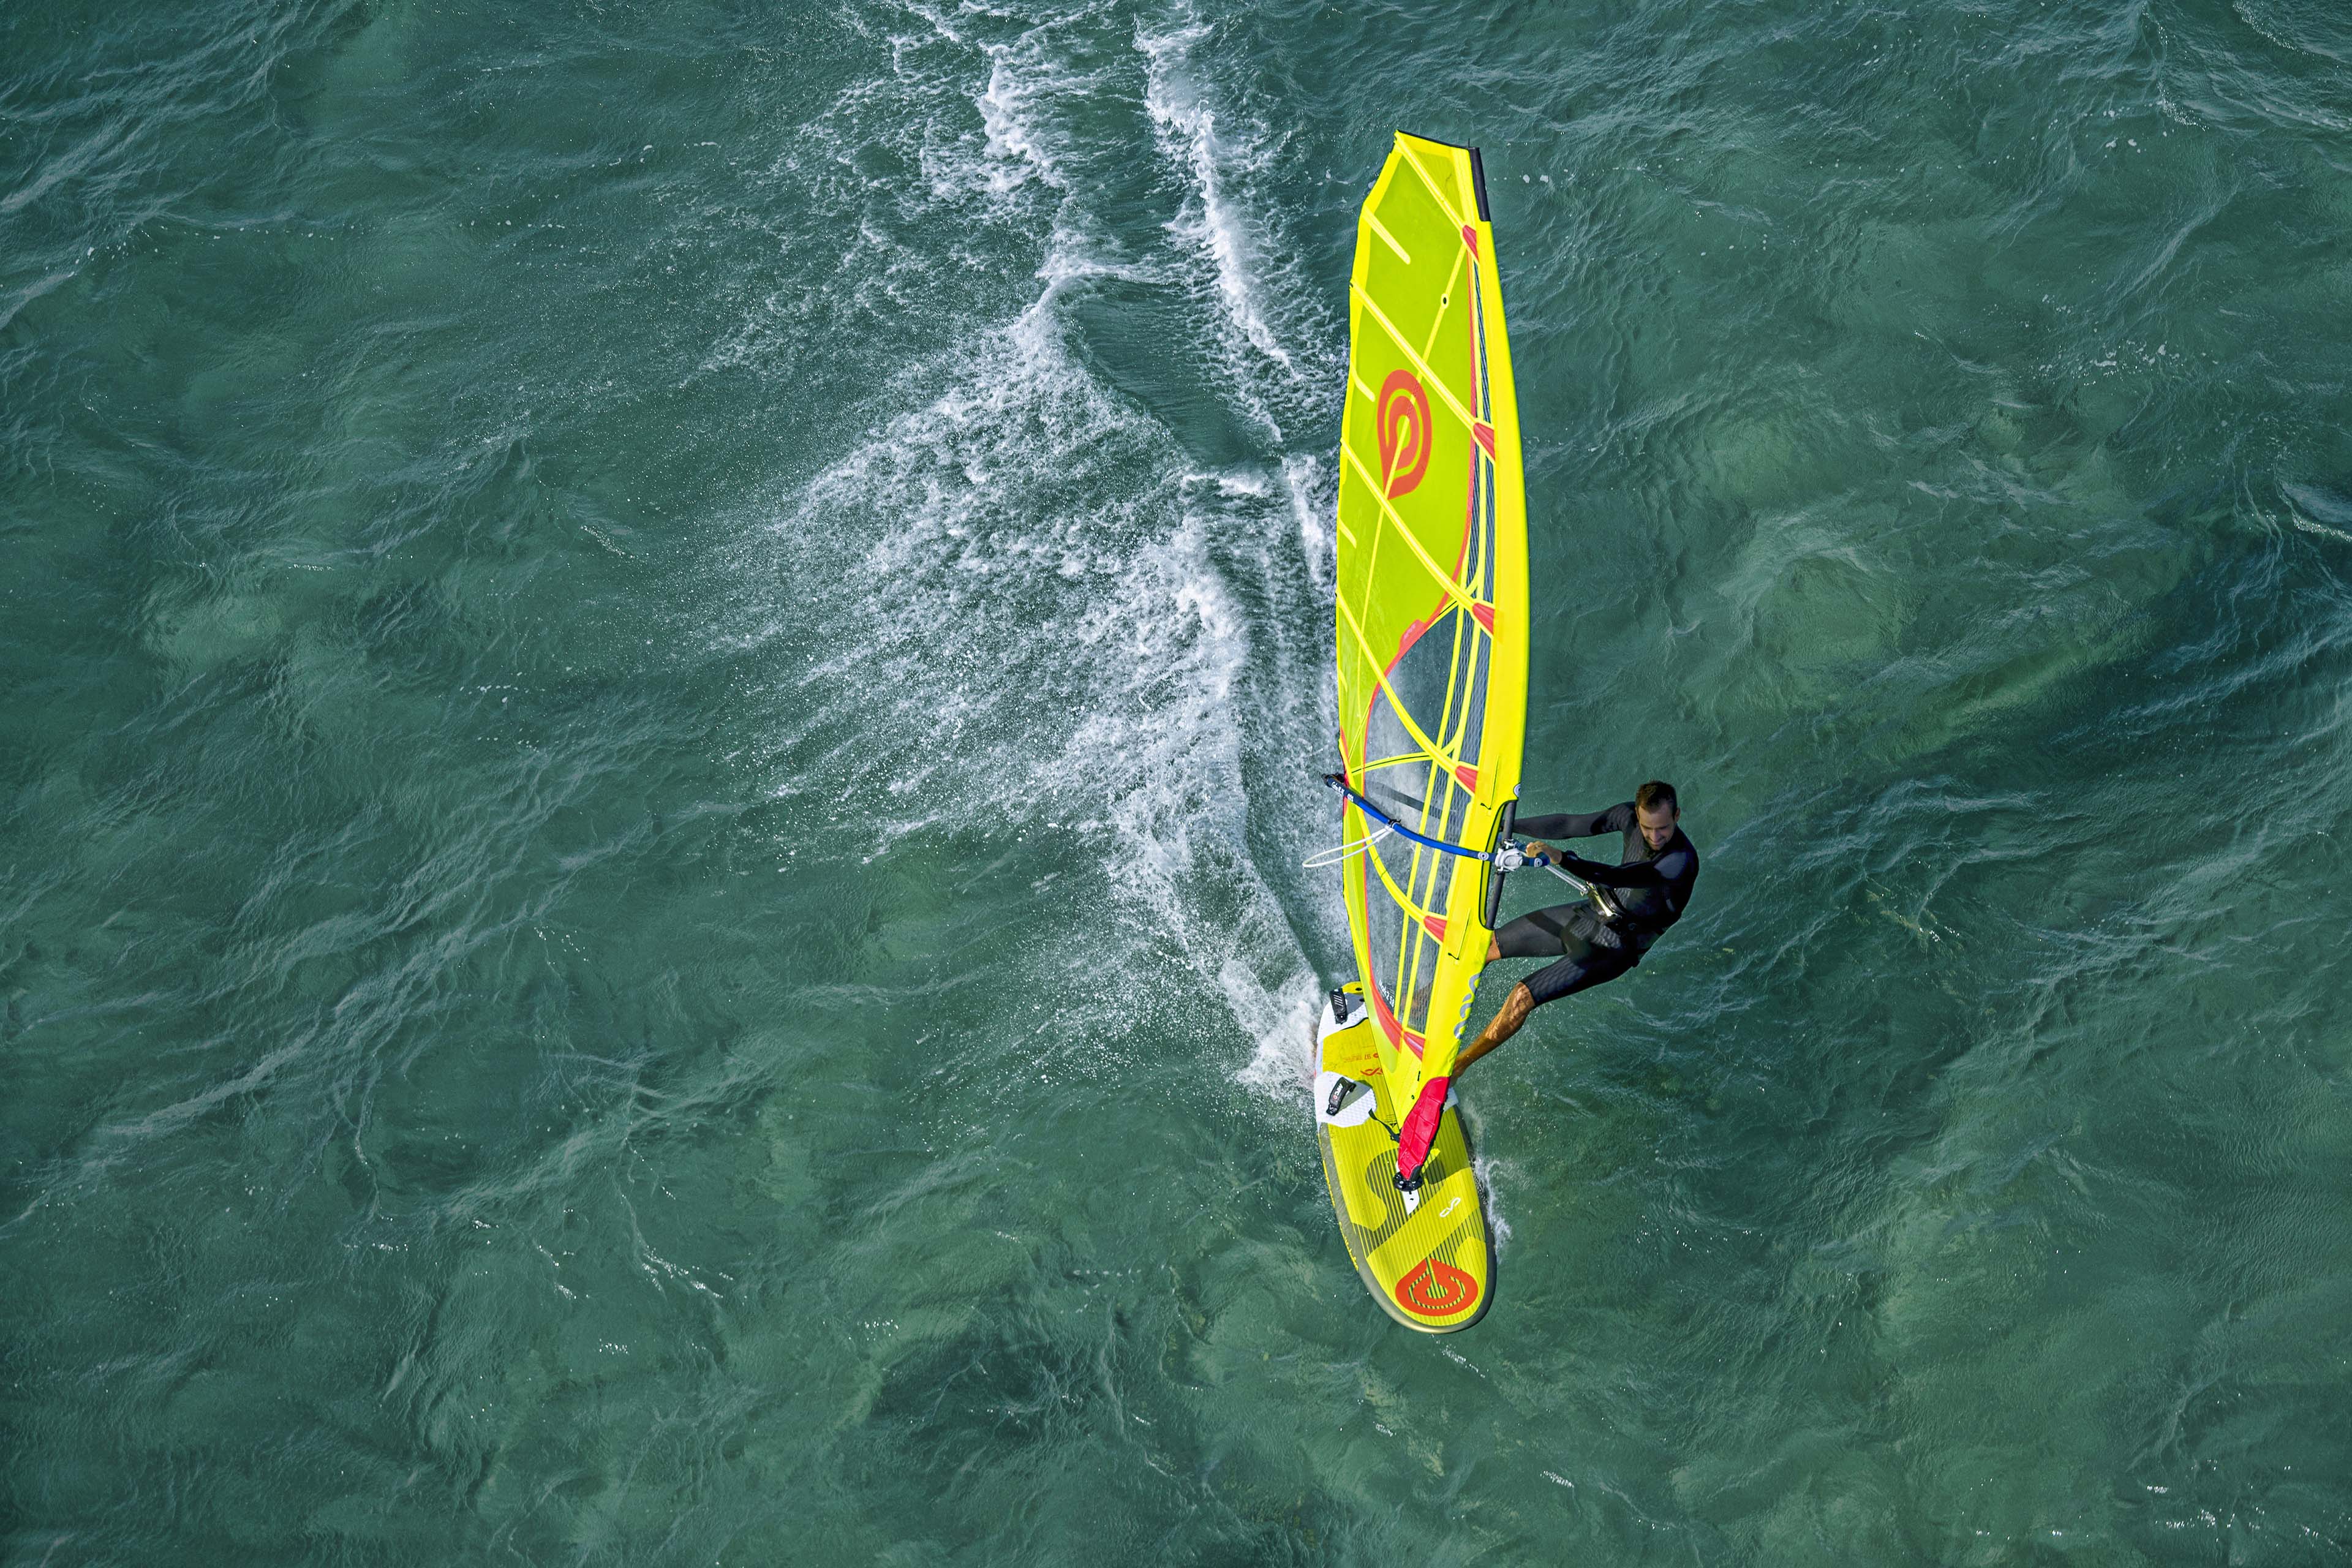 Goya Proton Pro Race Windsurf Board